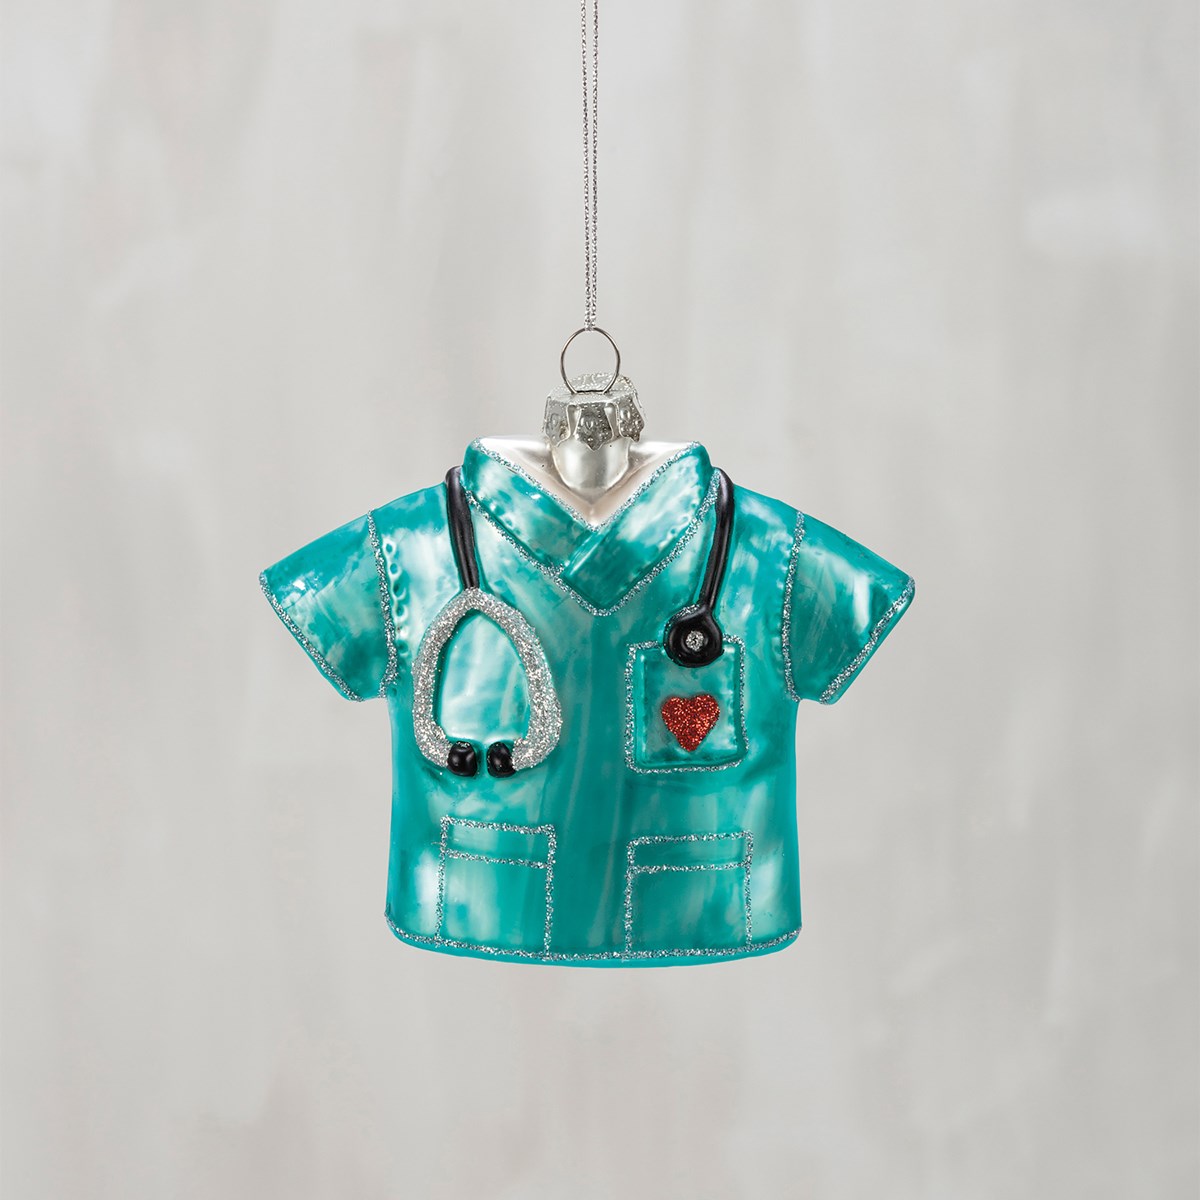 Glass Ornament - Nurse Scrubs - 4.25" x 4.25" x 1.25" - Glass, Metal, Glitter